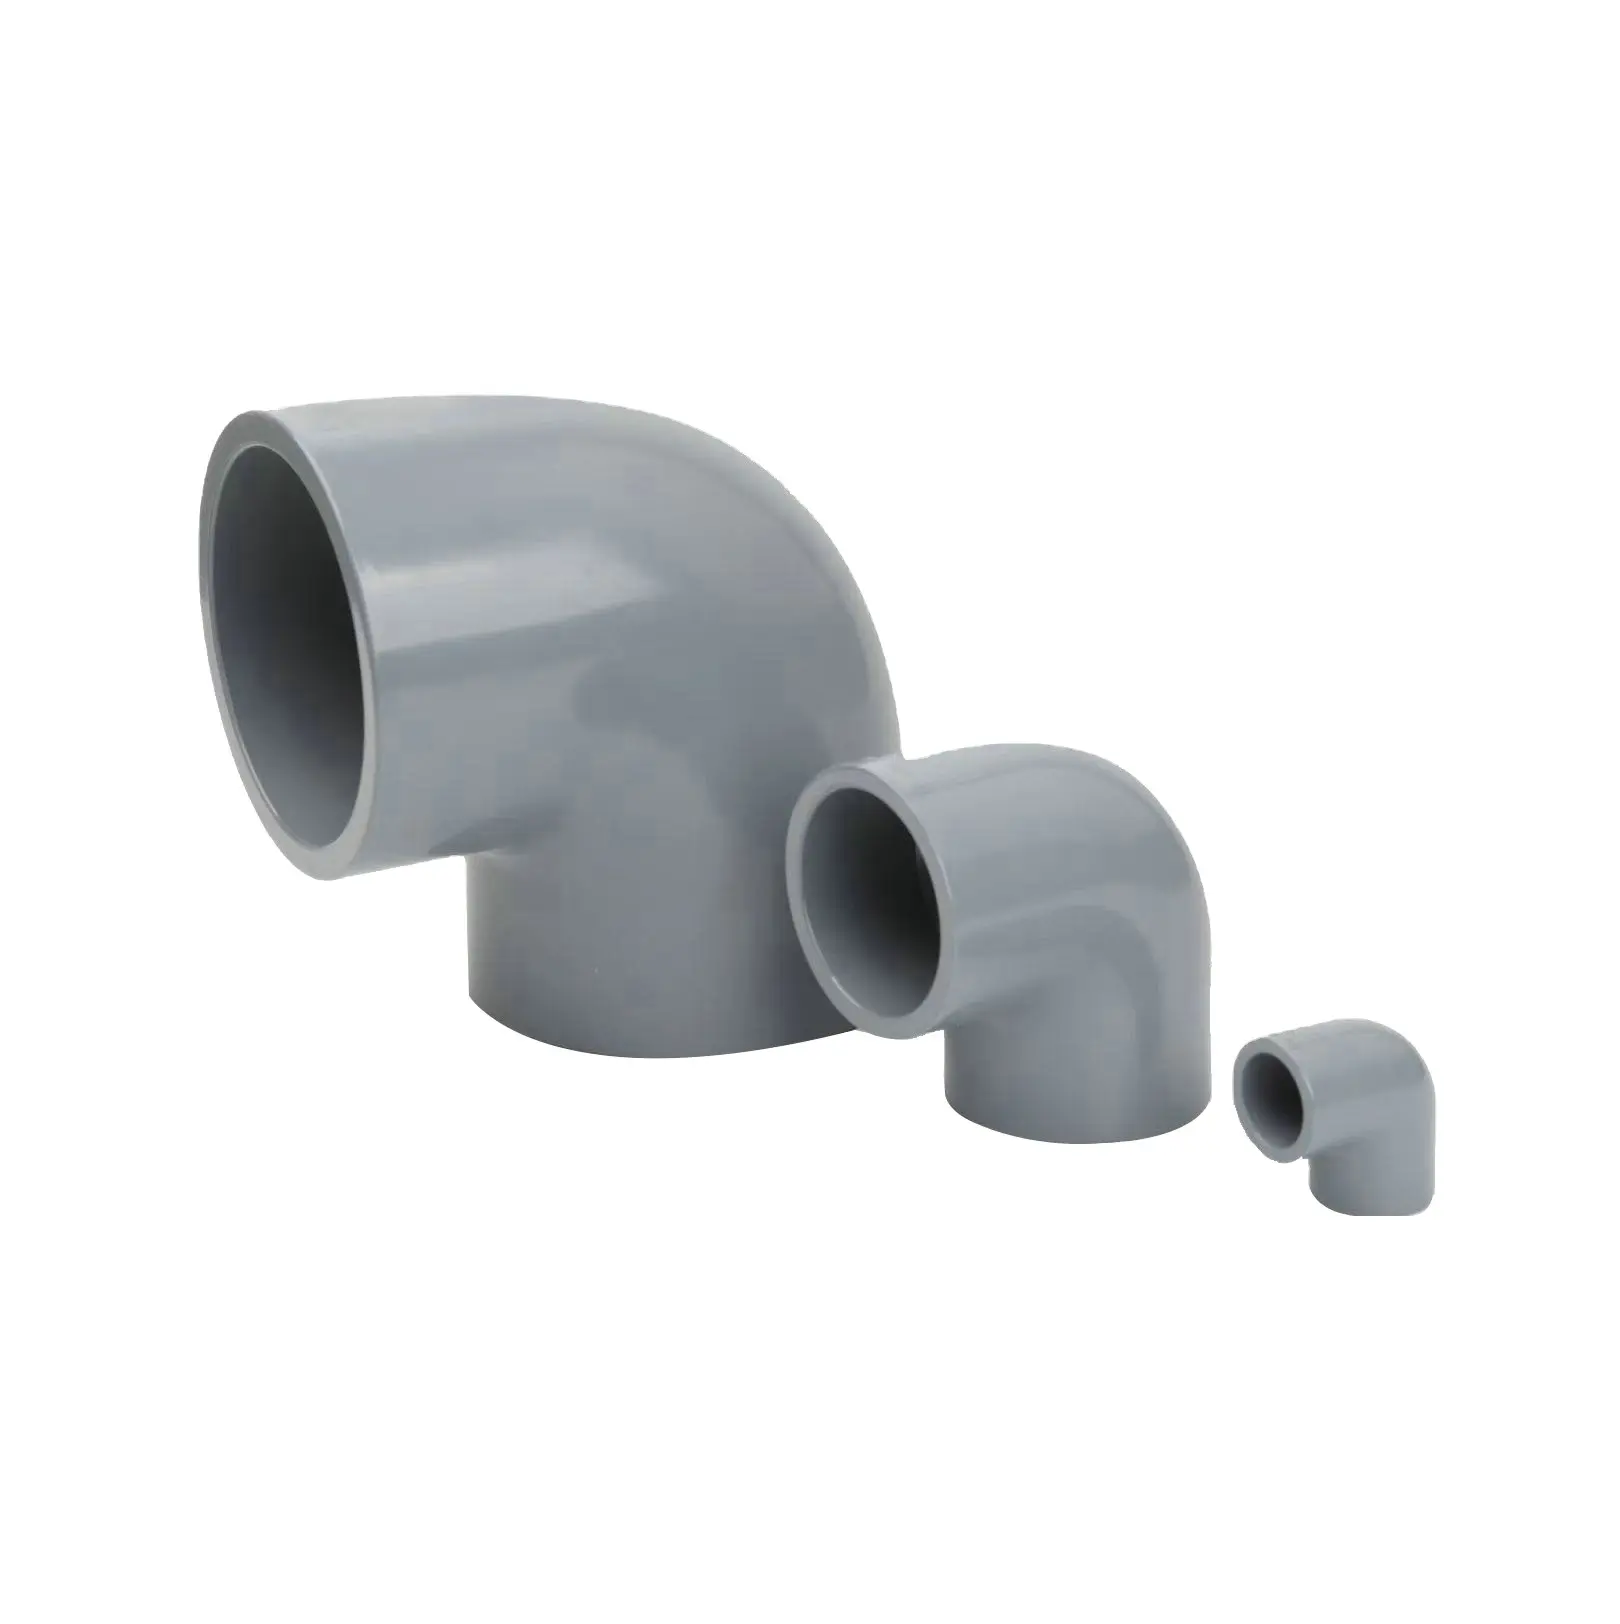 Cpvc nhựa HDPE PVC ống nước giá danh sách và phụ kiện các nhà sản xuất 1/2 "inch ASTM sch40 PVC Ống